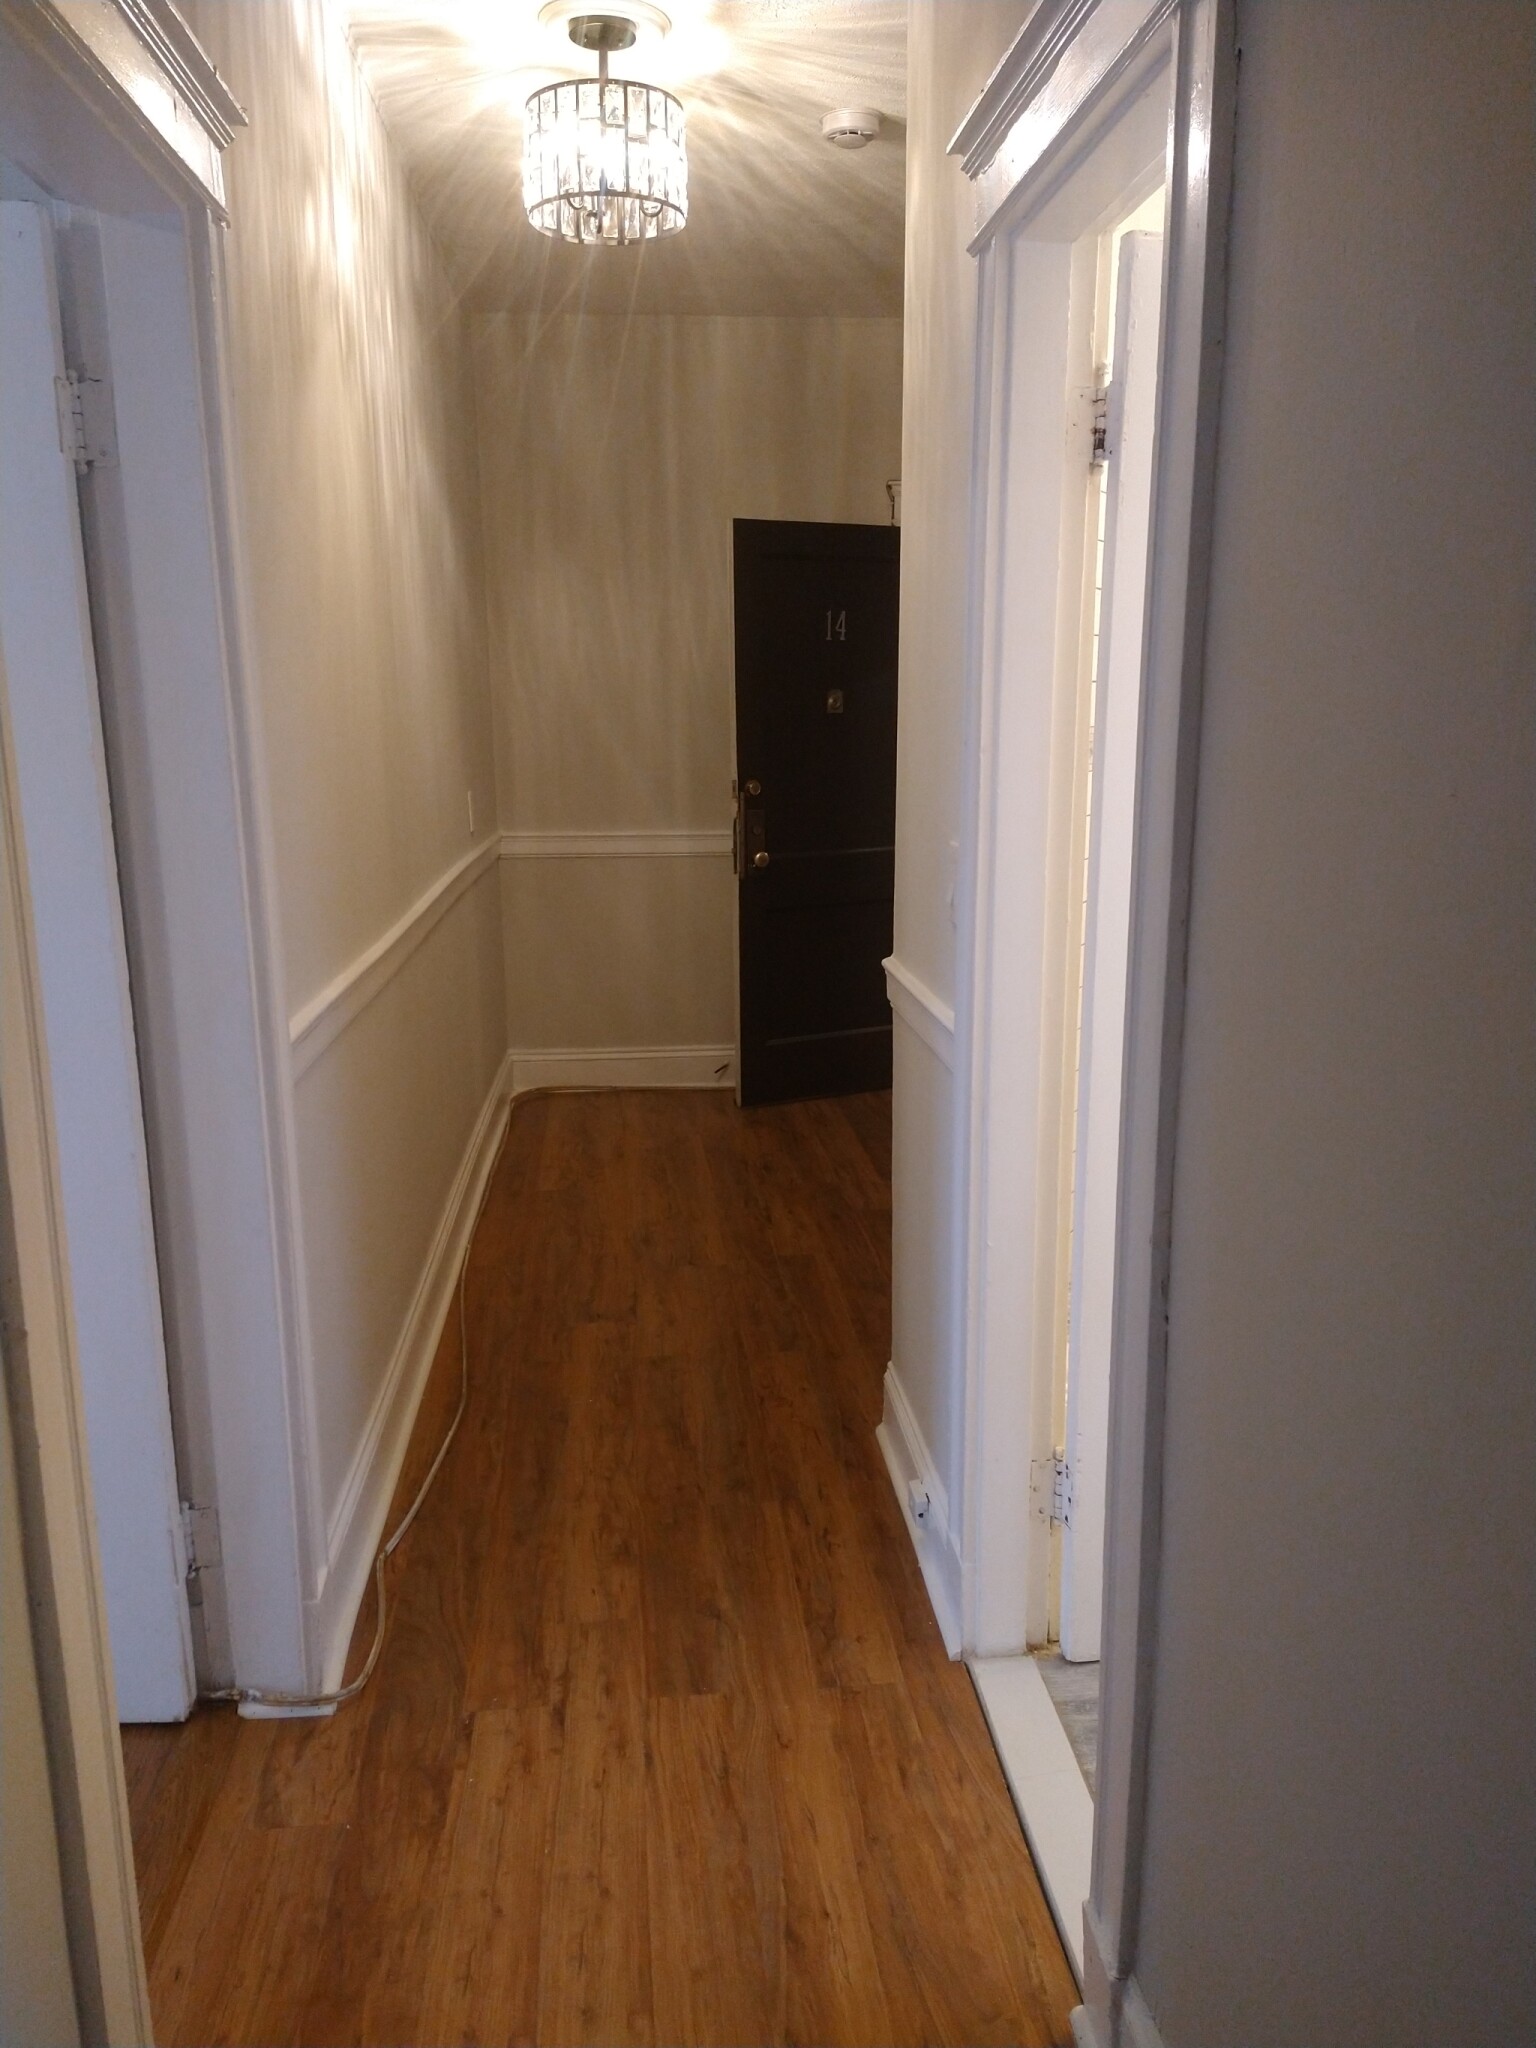 Photos of apartment on Penniman,Boston MA 02134